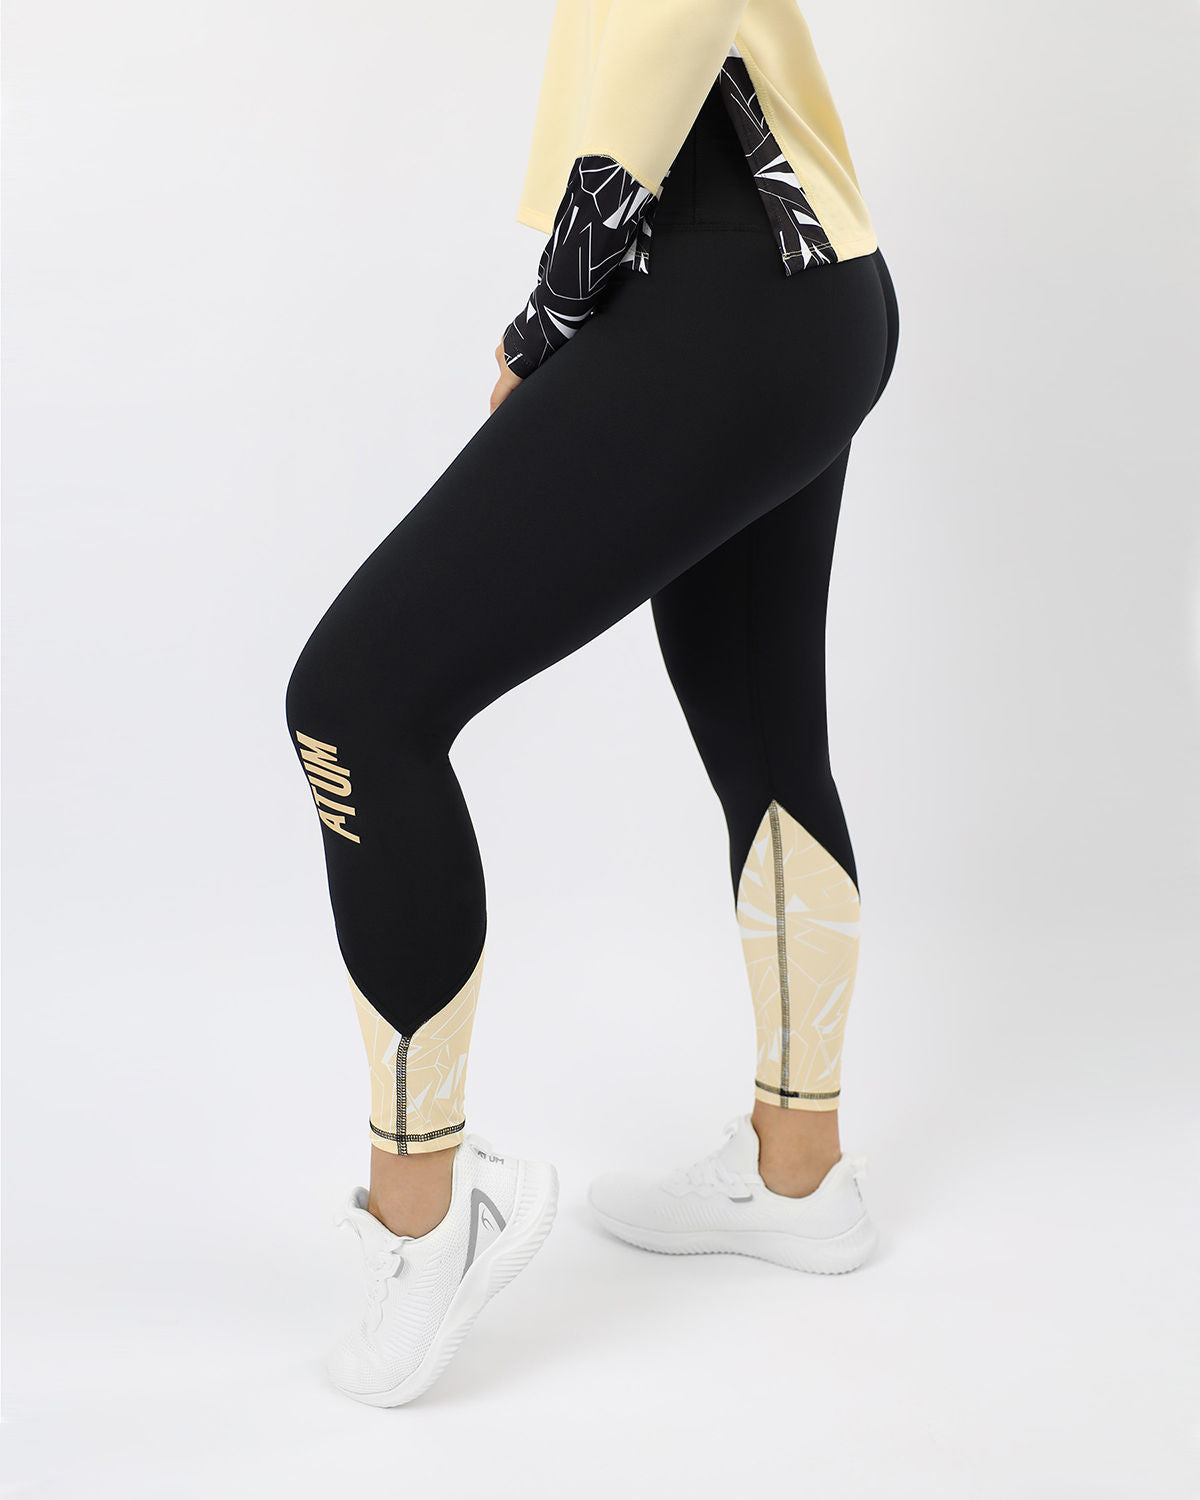 Atum Women's leggings Printed - Atum Egypt #